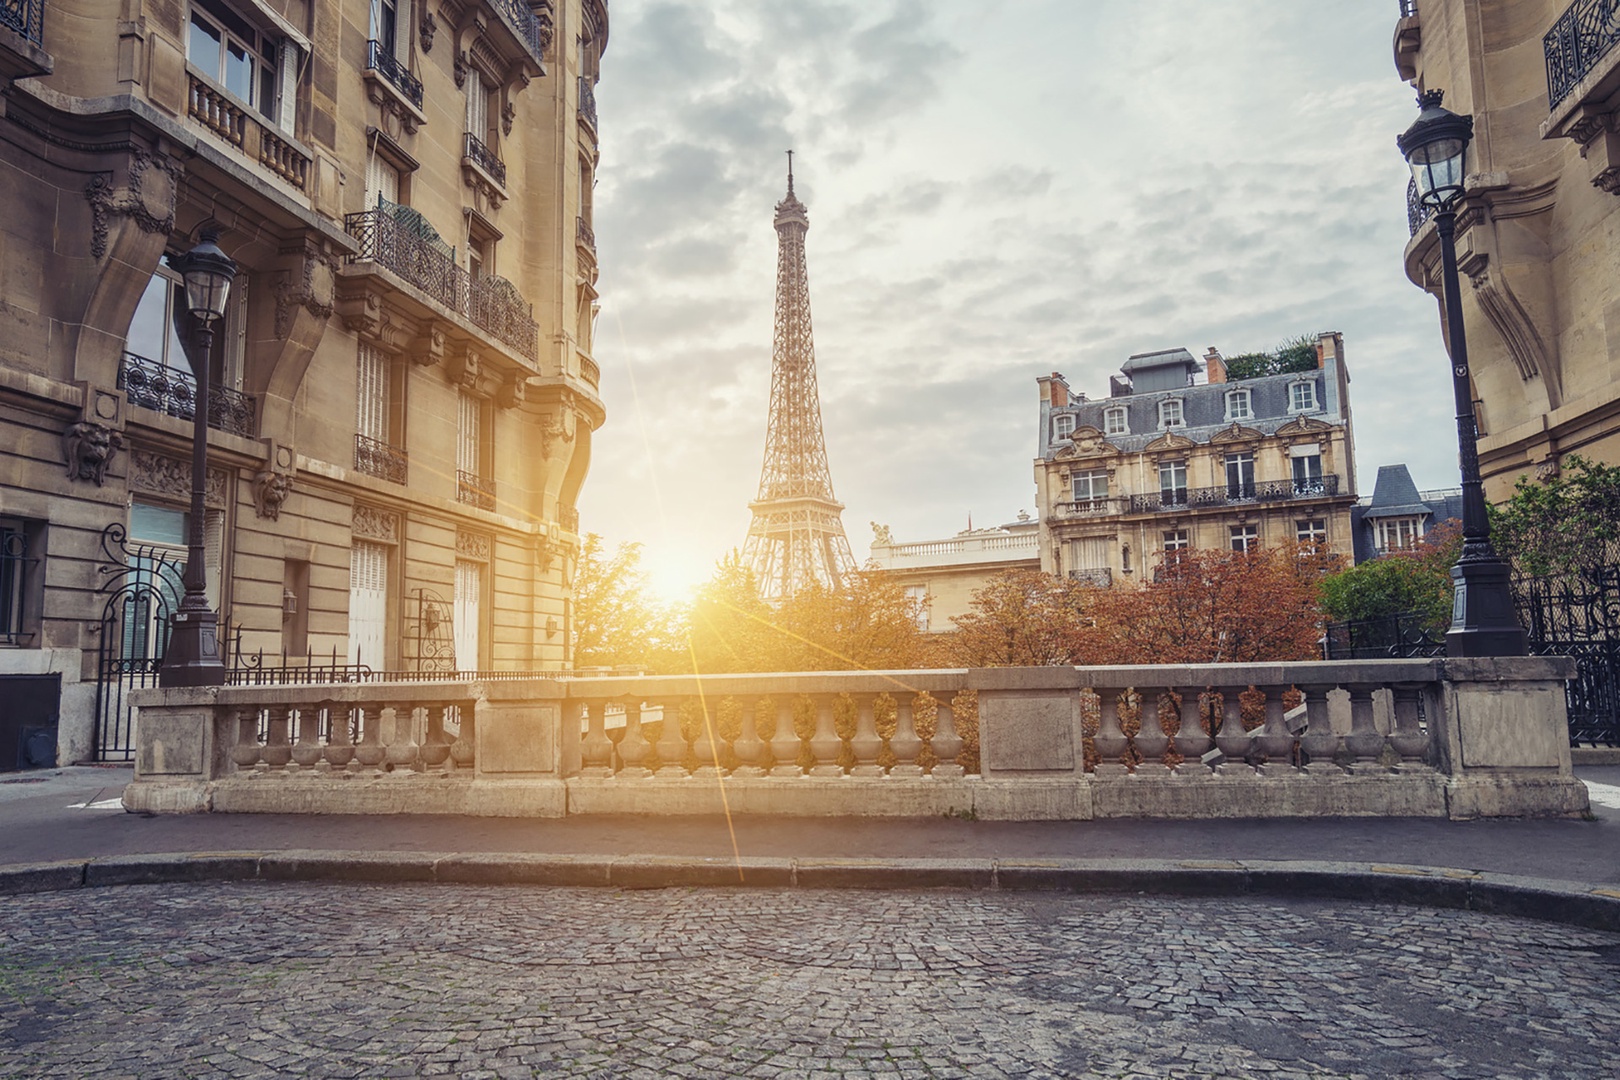 Elegant architecture and classic Parisian views.